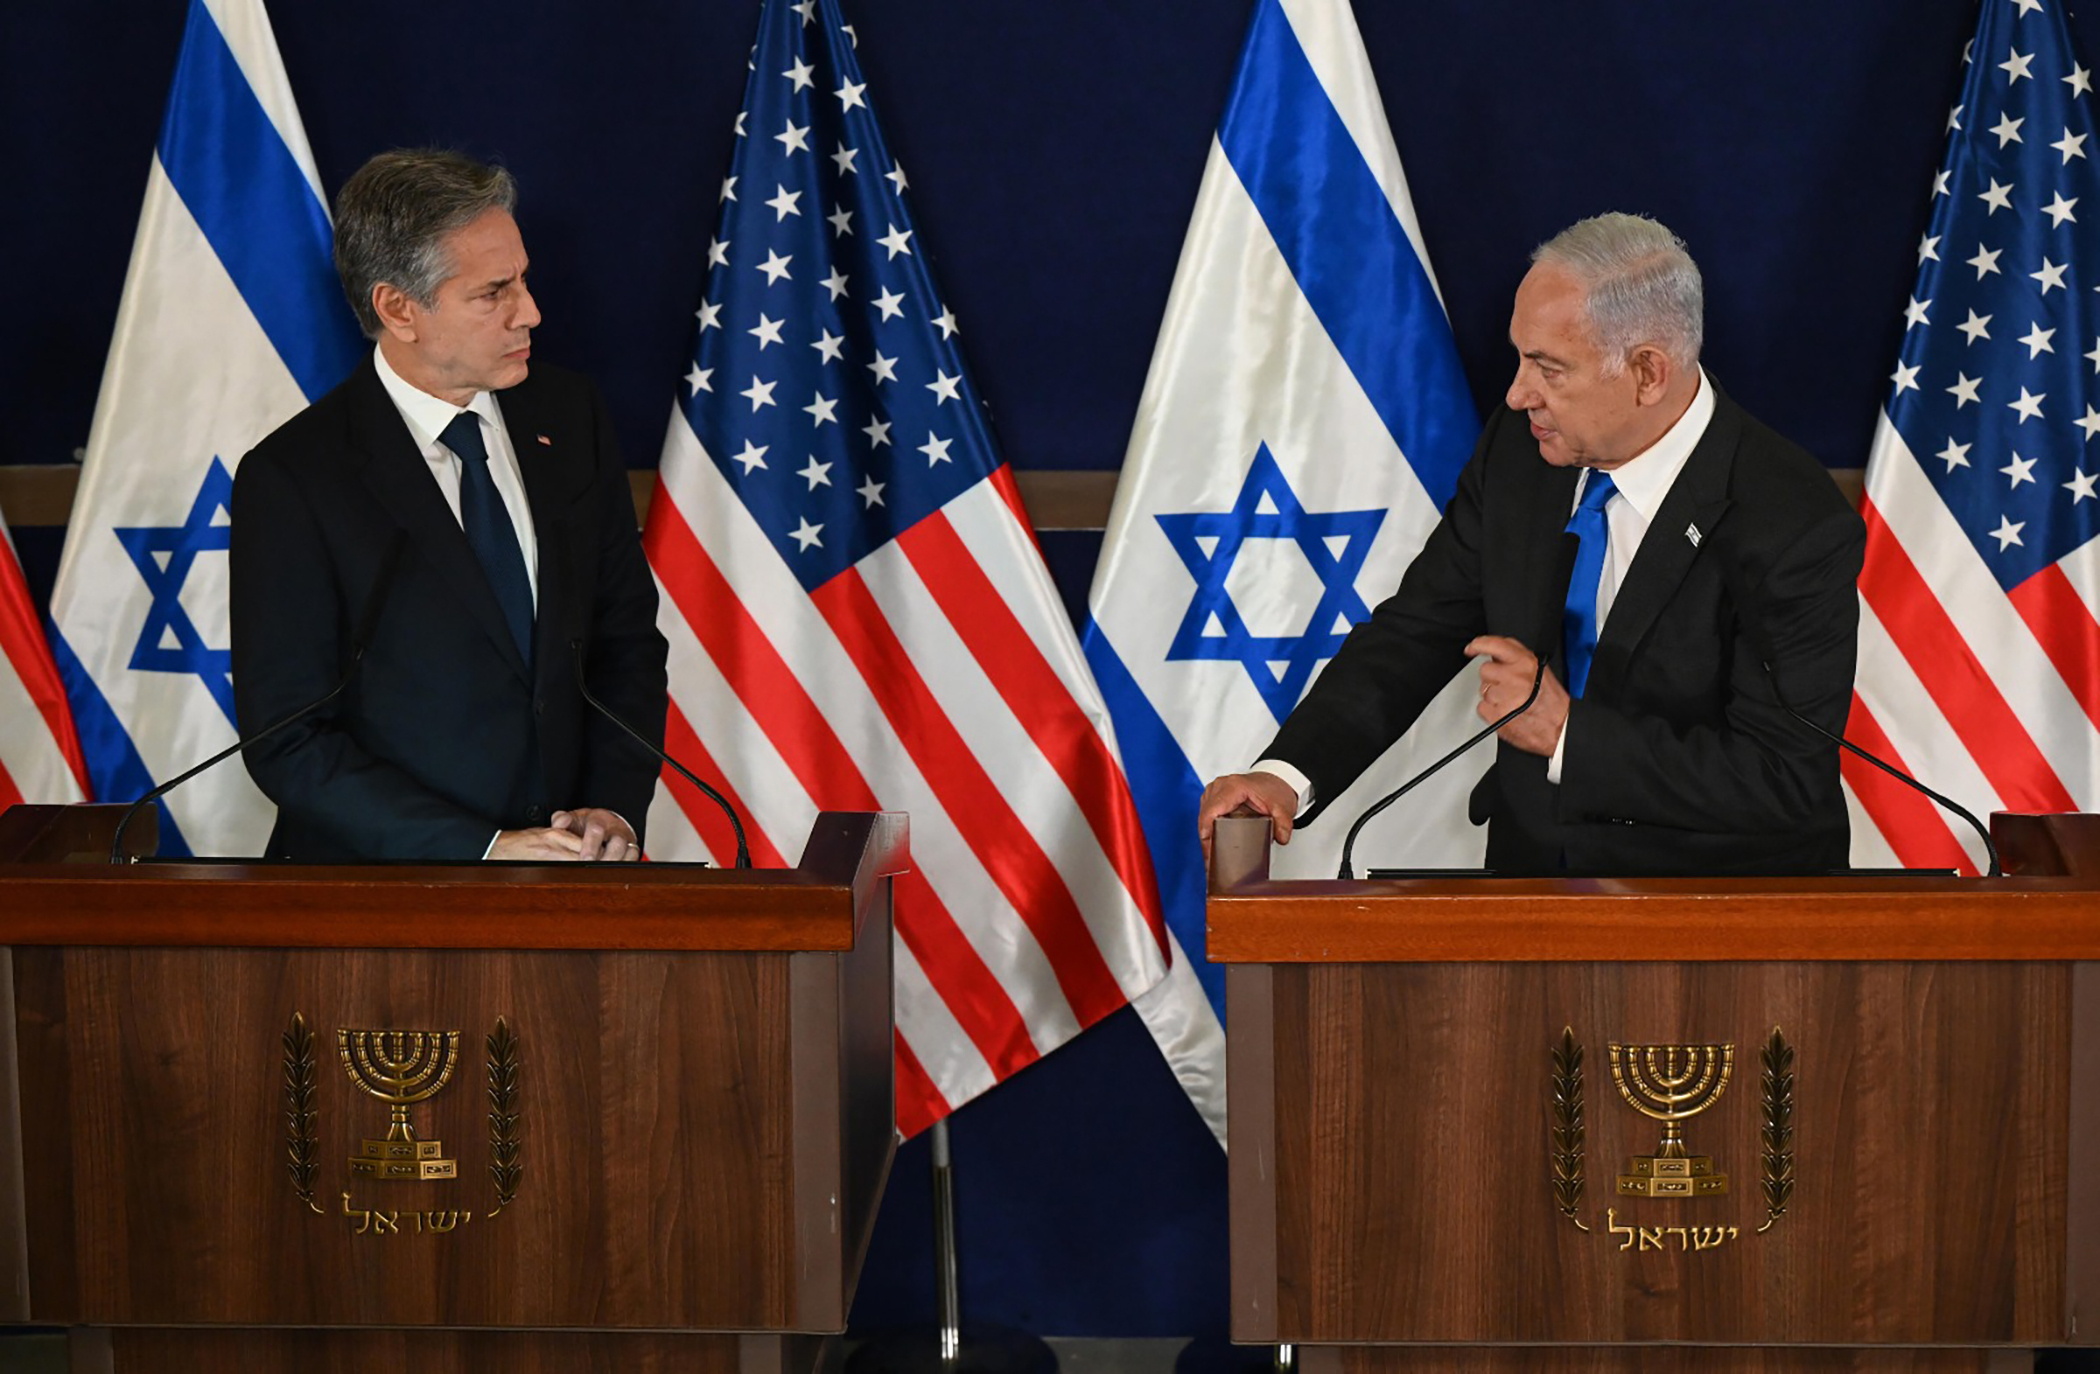 Αντ. Μπλίνκεν: «Οι ΗΠΑ θα βρίσκονται για πάντα στο πλευρό του Ισραήλ» - Οι φωτογραφίες της φρίκης